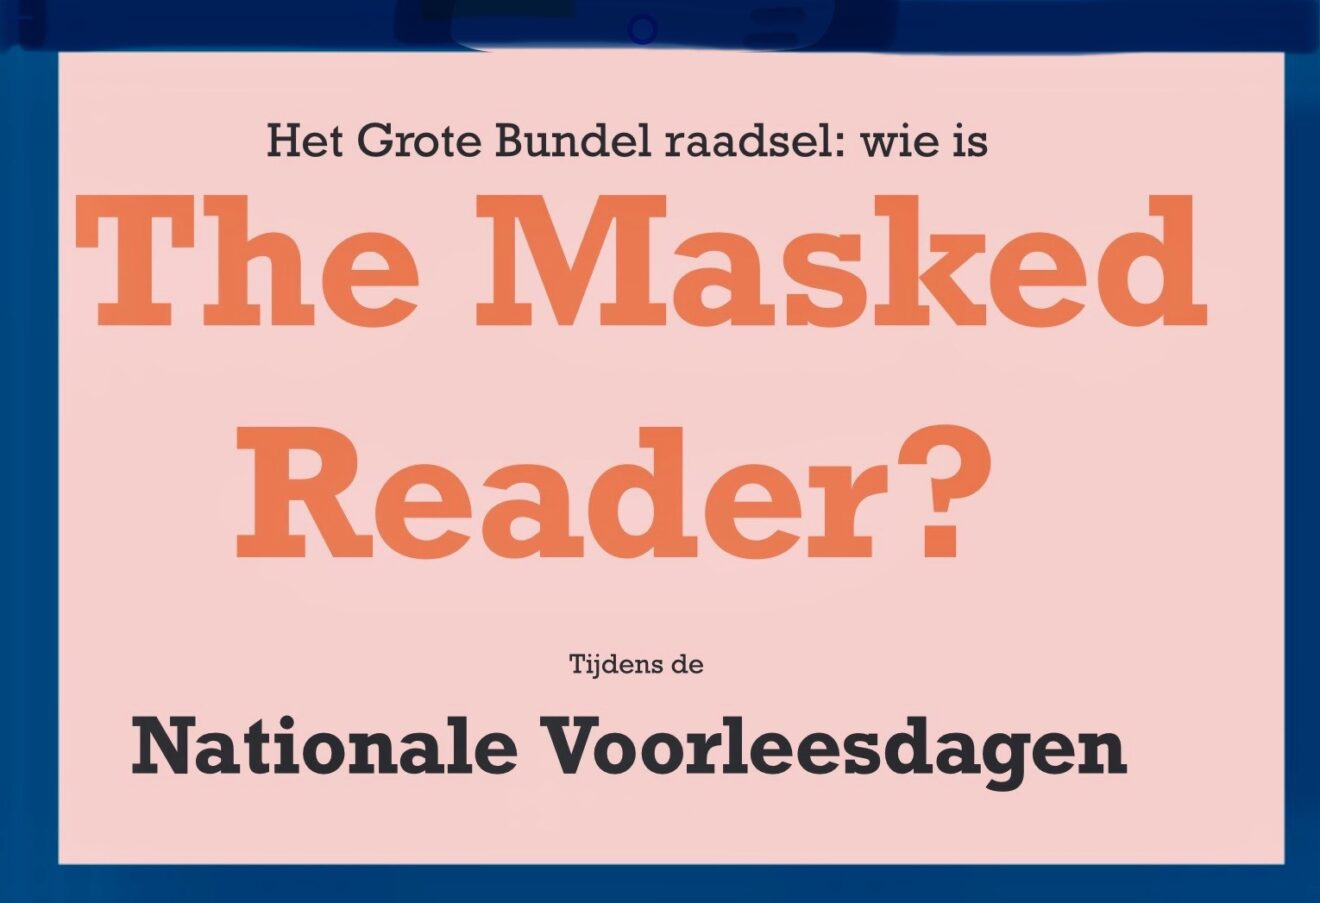 The Masked Reader